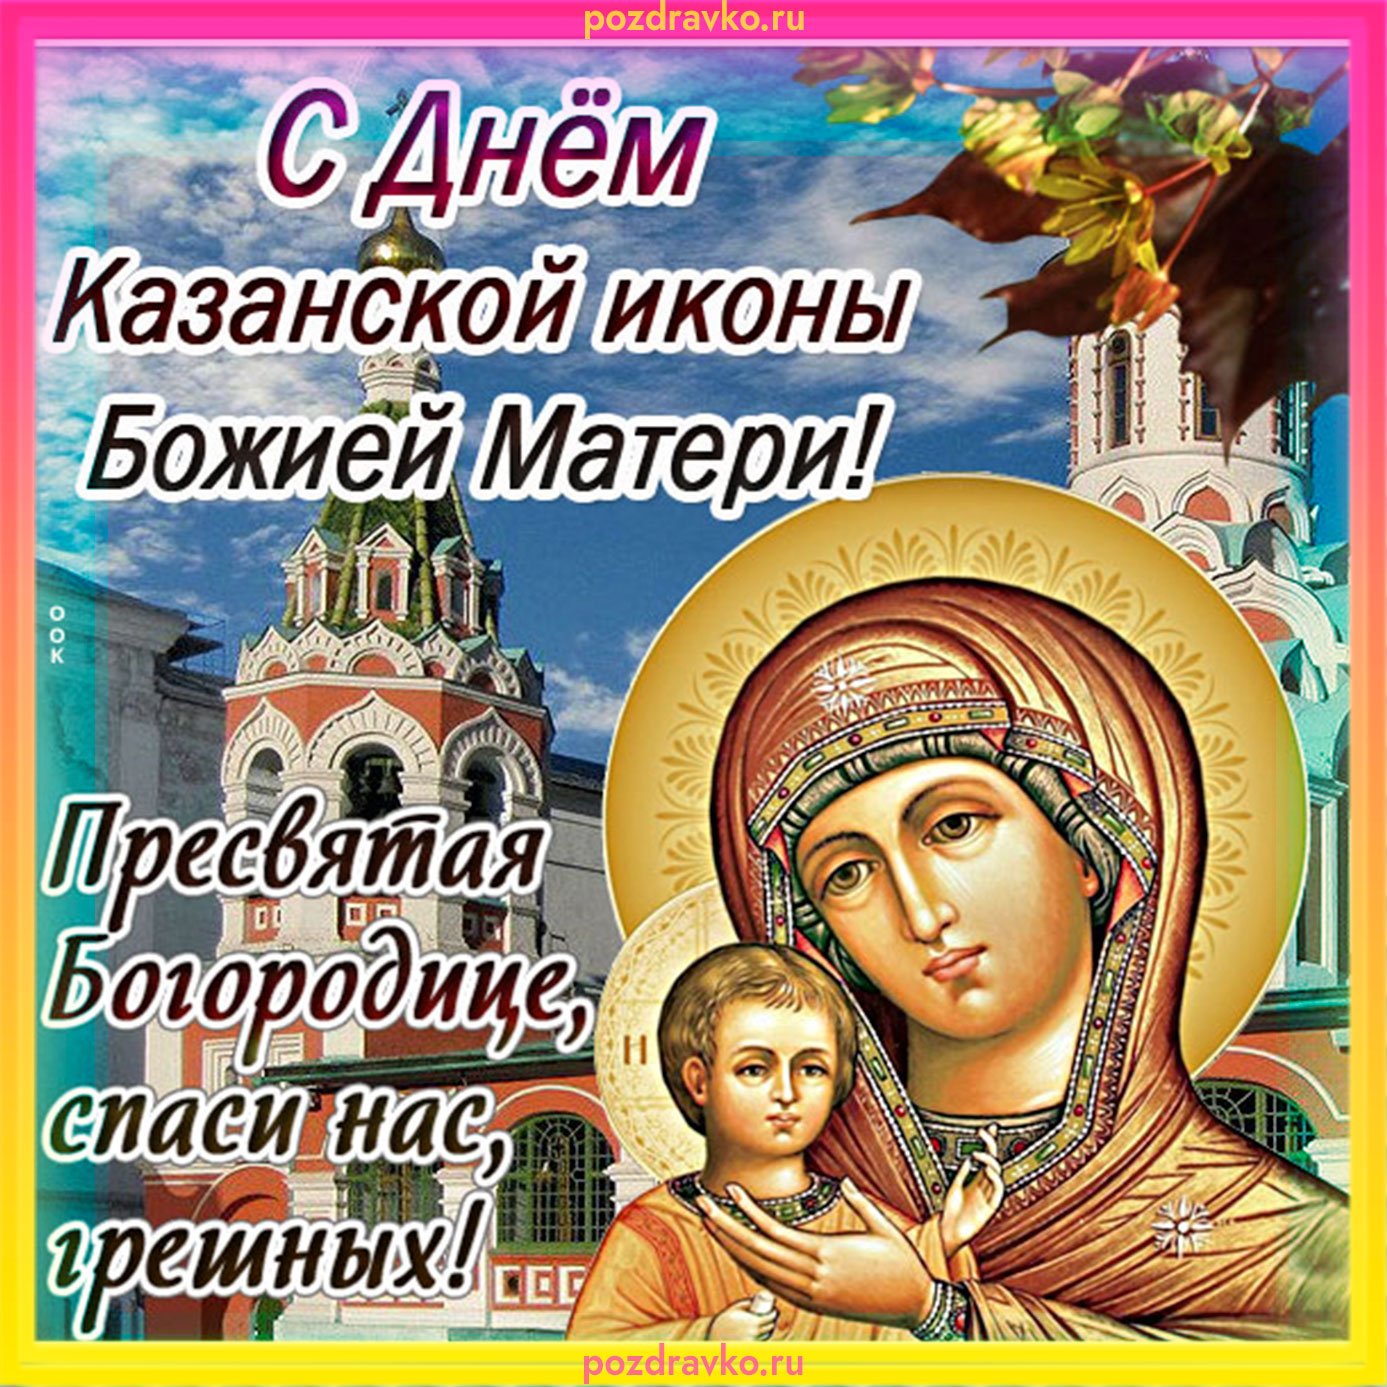 Казанская икона Божией матери - выбирайте лучшую картинку